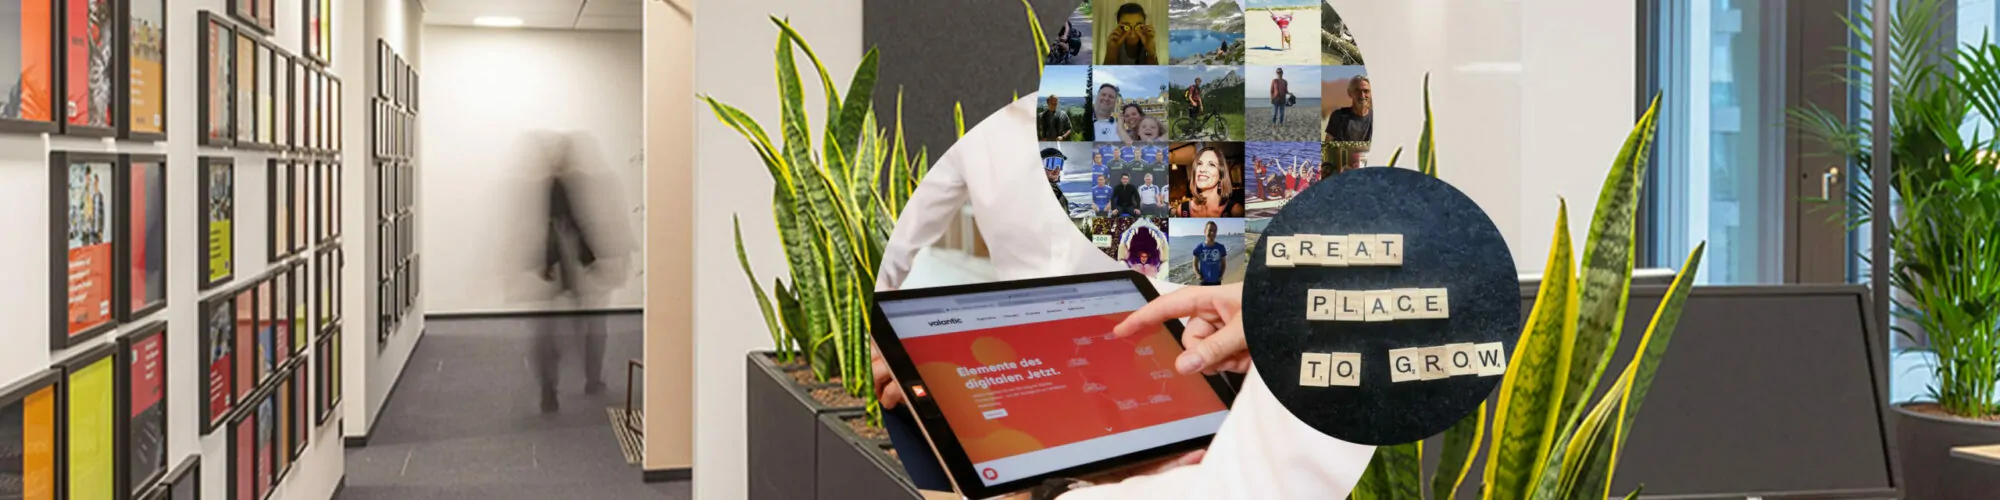 Bild der Büroräume von valantic, daneben ein Tablet mit der valantic Website sowie der Schriftzug: Great Place To Grow